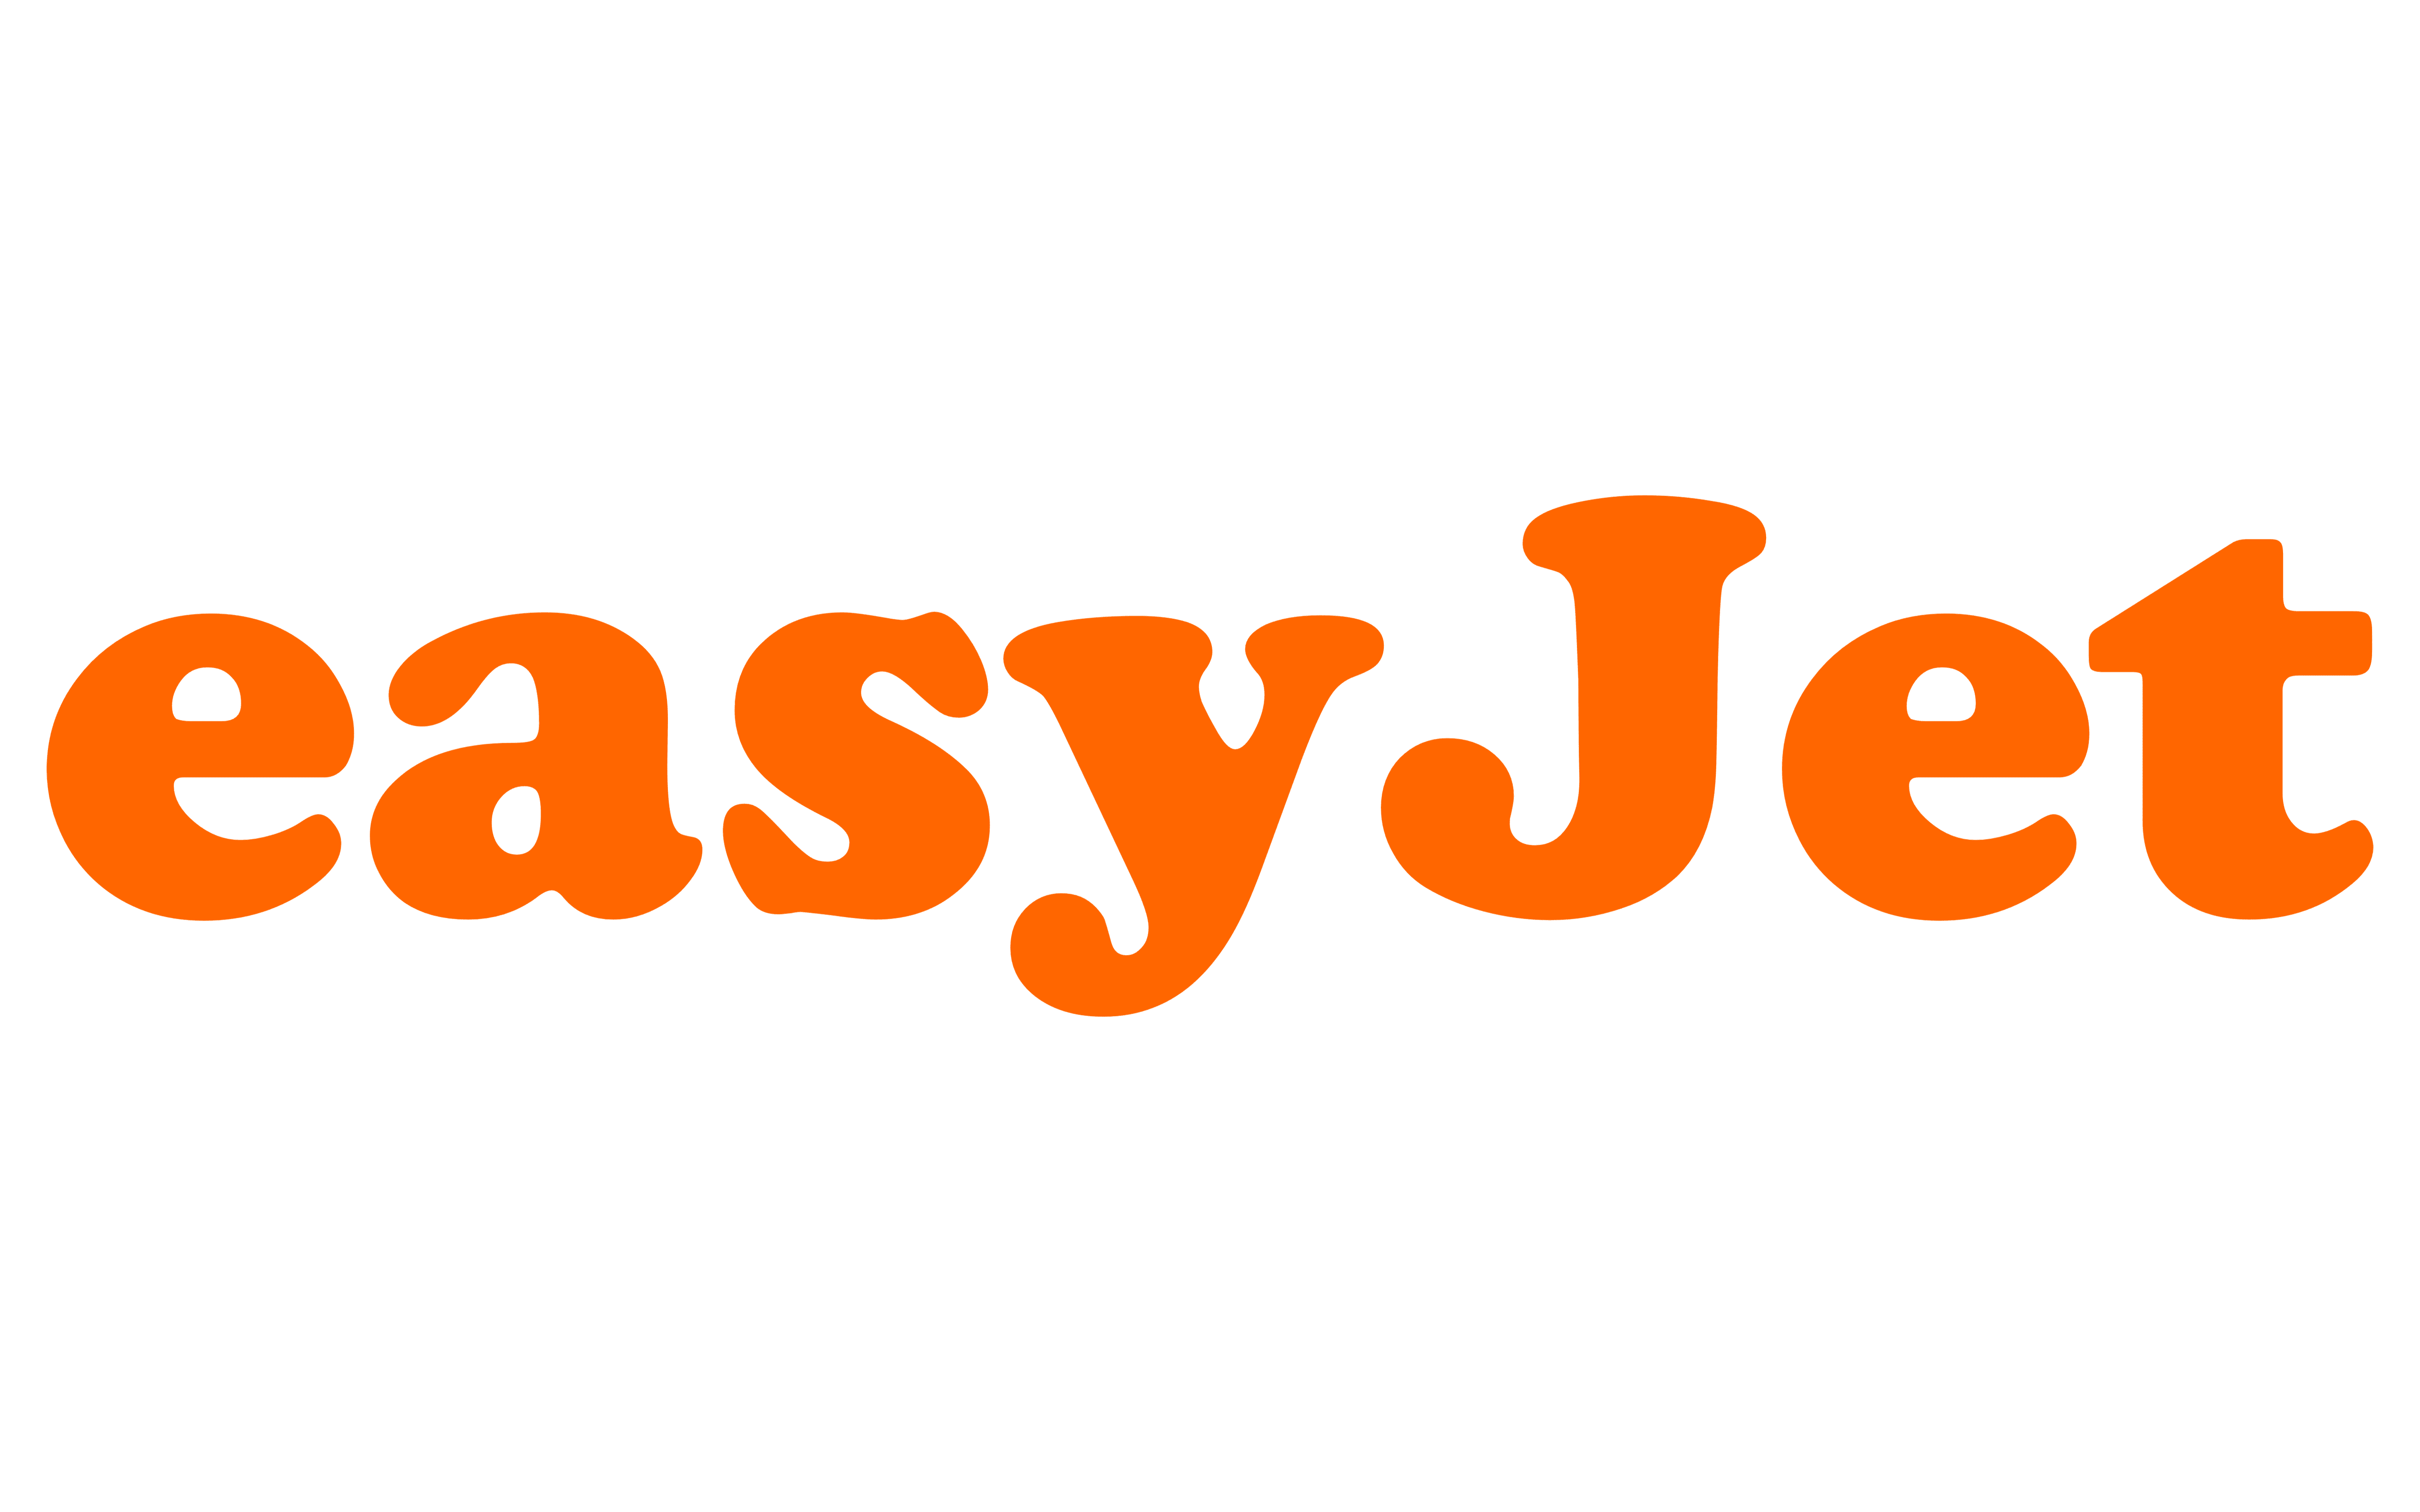 CODICE SCONTO EasyJet - Trasporto per le vacanze semplice e sicuro con sconto del 10%